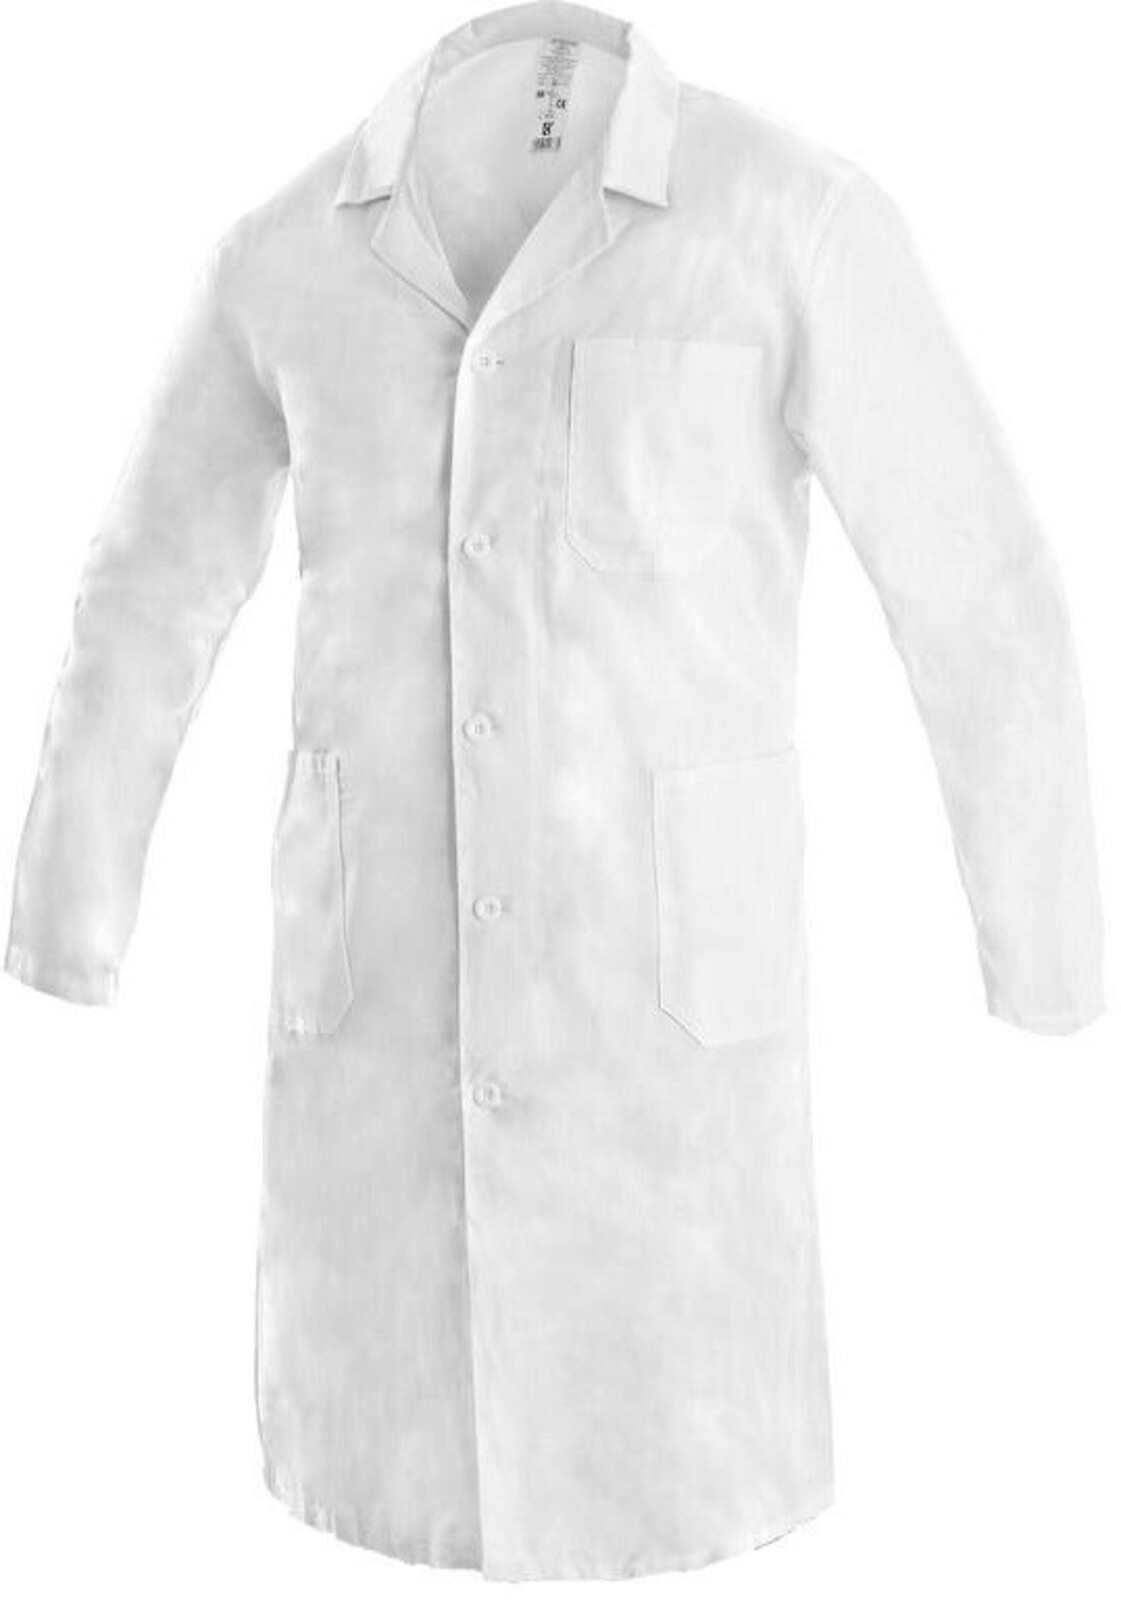 Pánsky plášť CXS Adam - veľkosť: 44, farba: biela